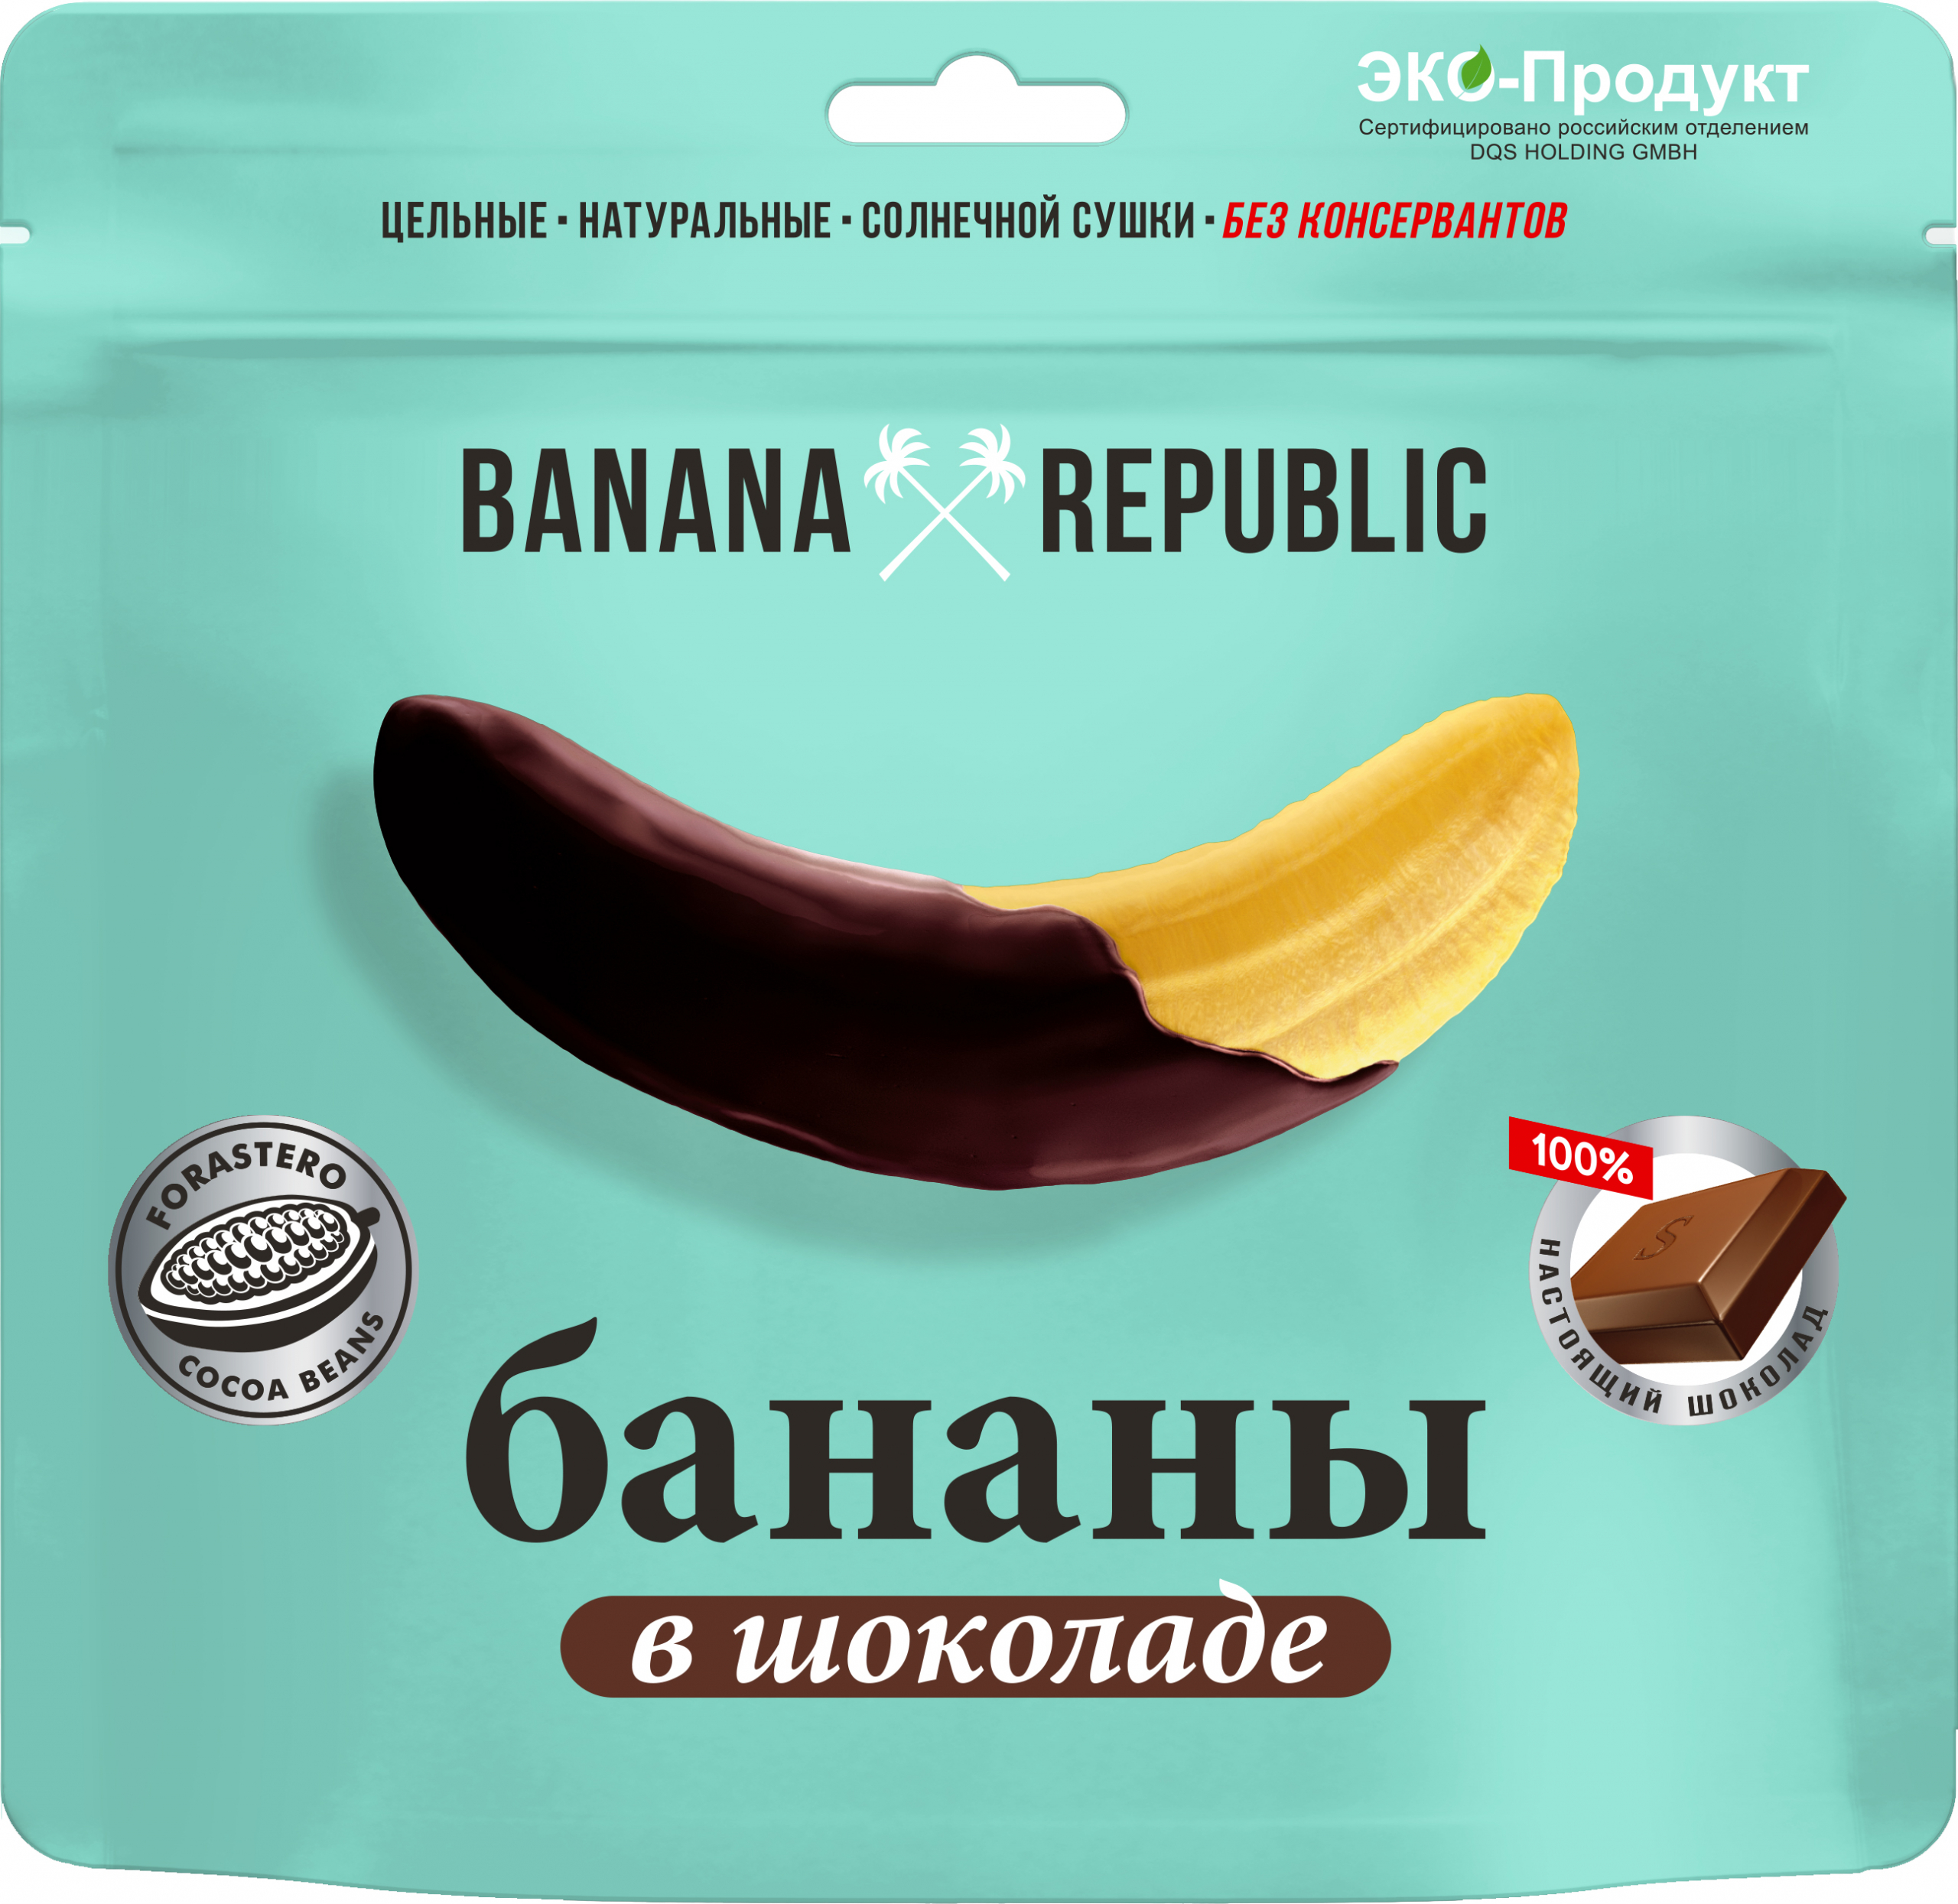 Бананы Banana Republic сушёные, в шоколаде, 180 г